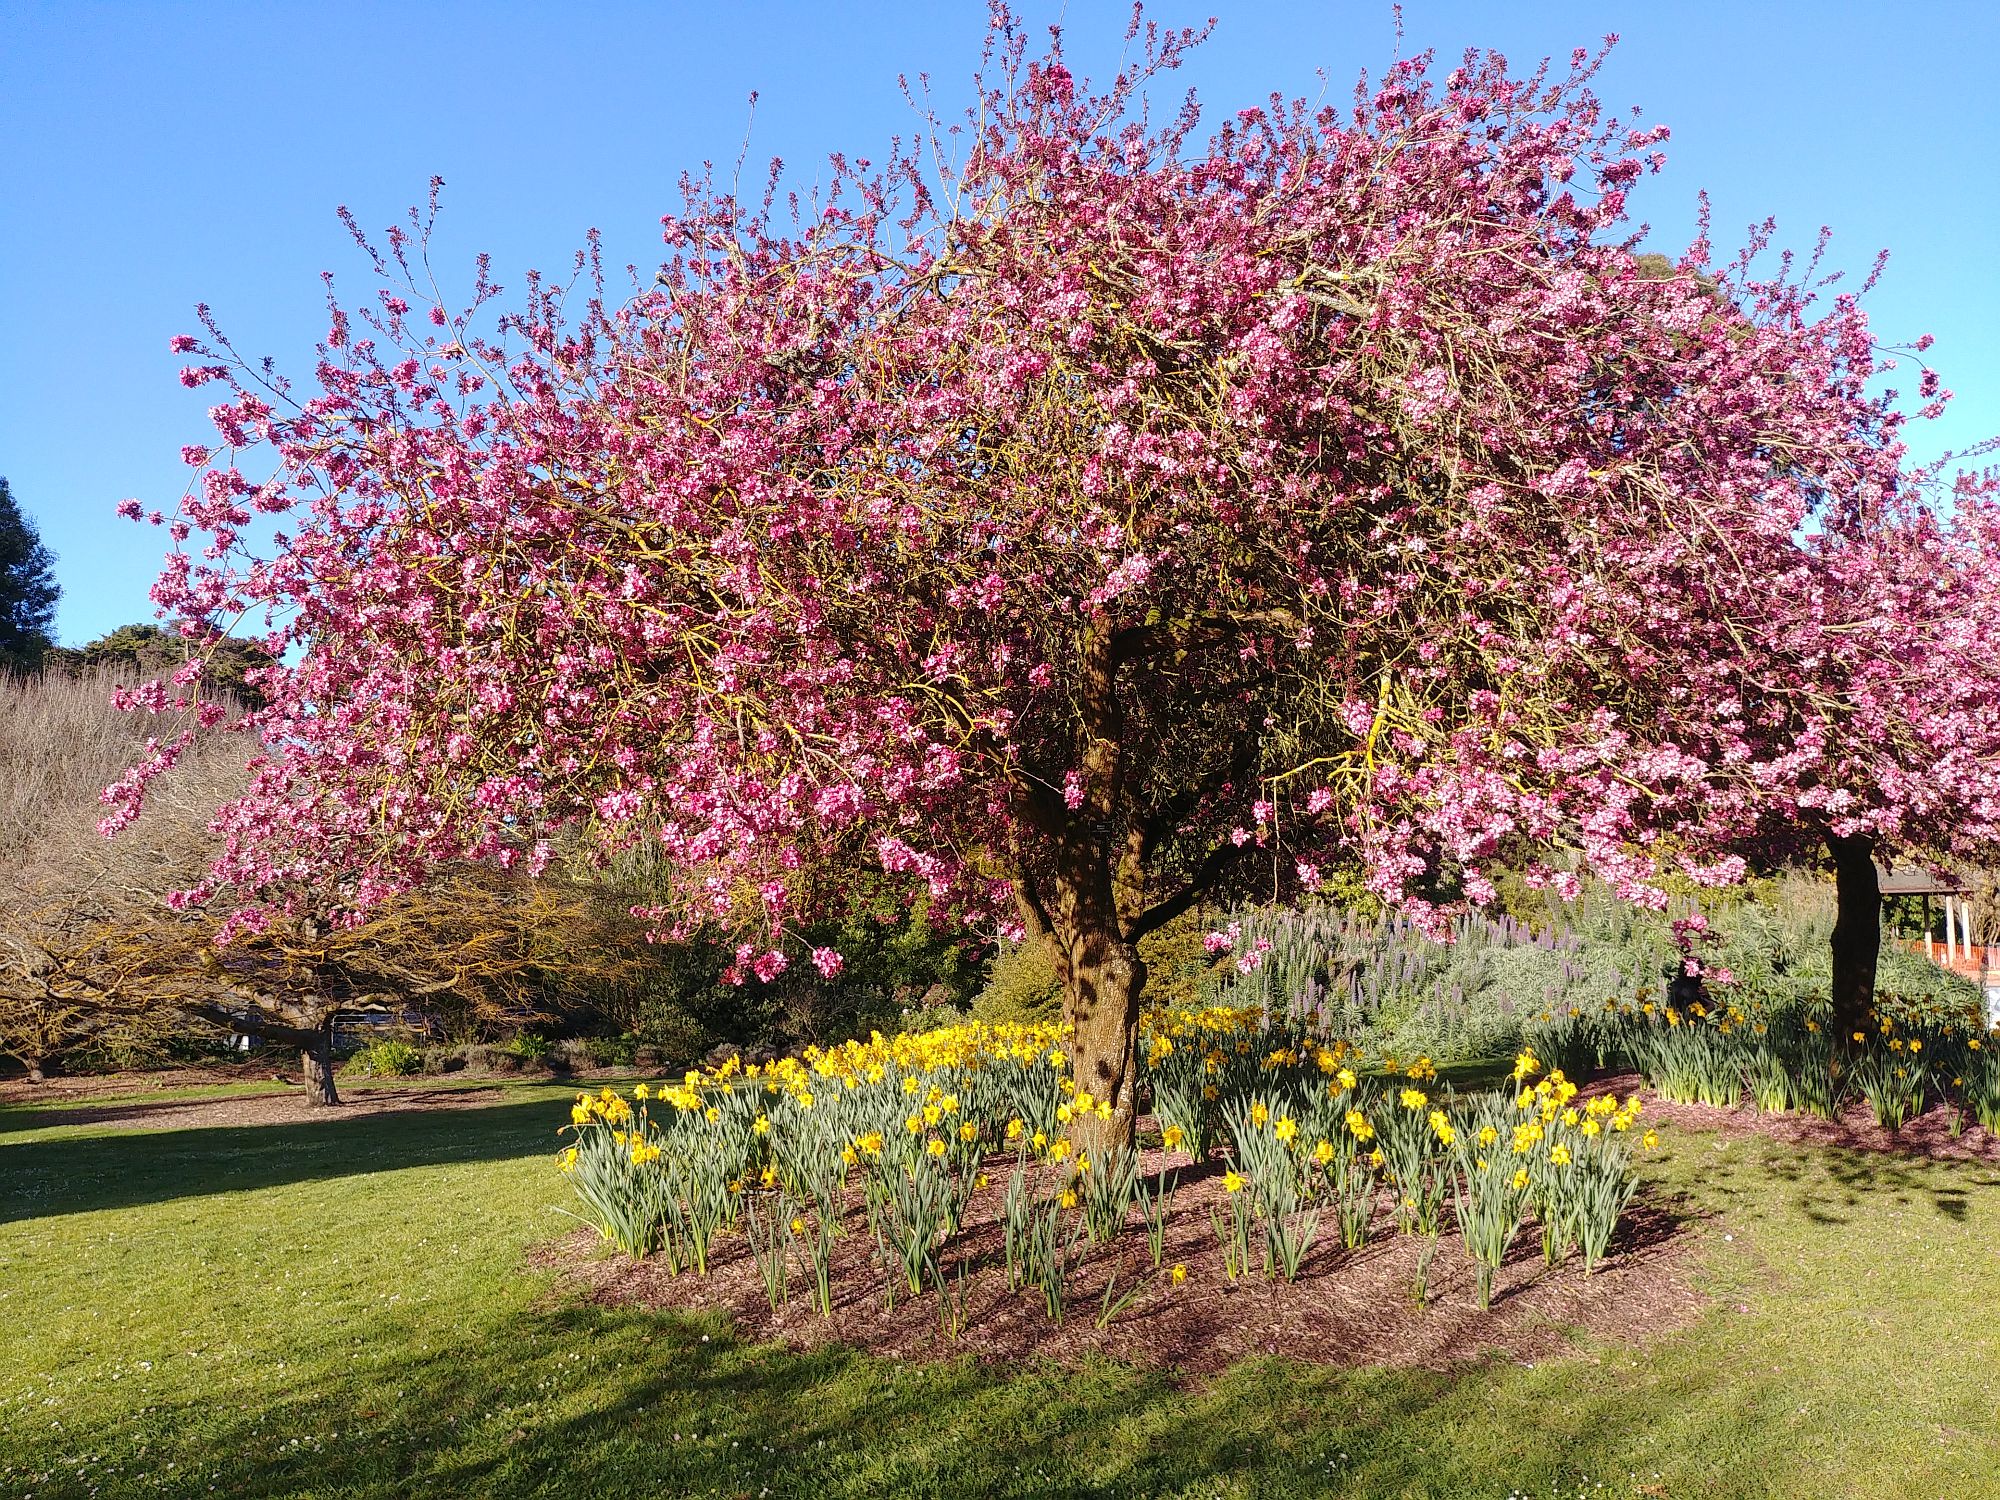 Botanic Garden - 12 - Cherry tree